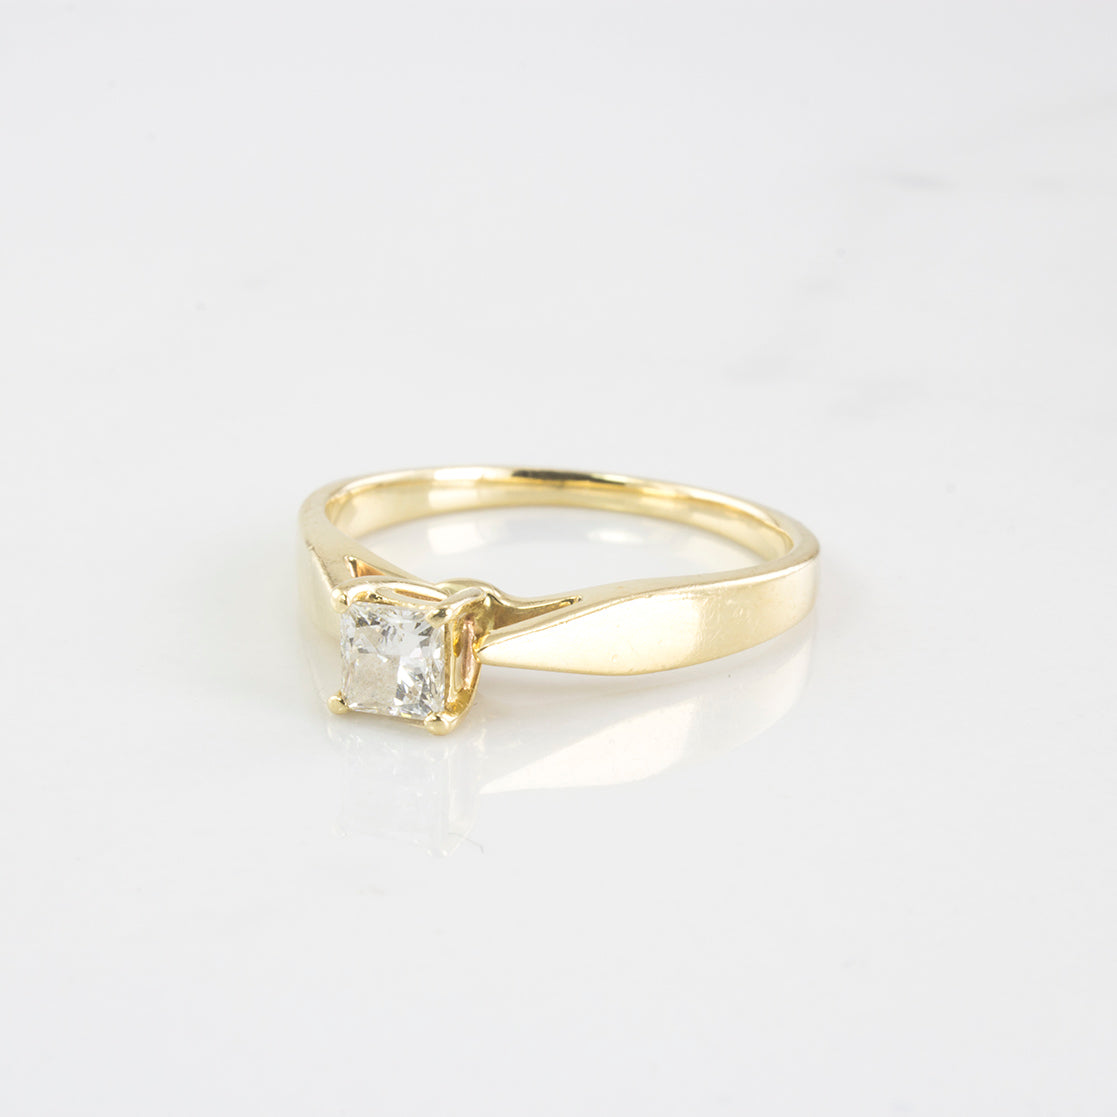 Princess Cut Diamond Solitaire Engagement Ring | 0.31 ctw | SZ 6.25 |